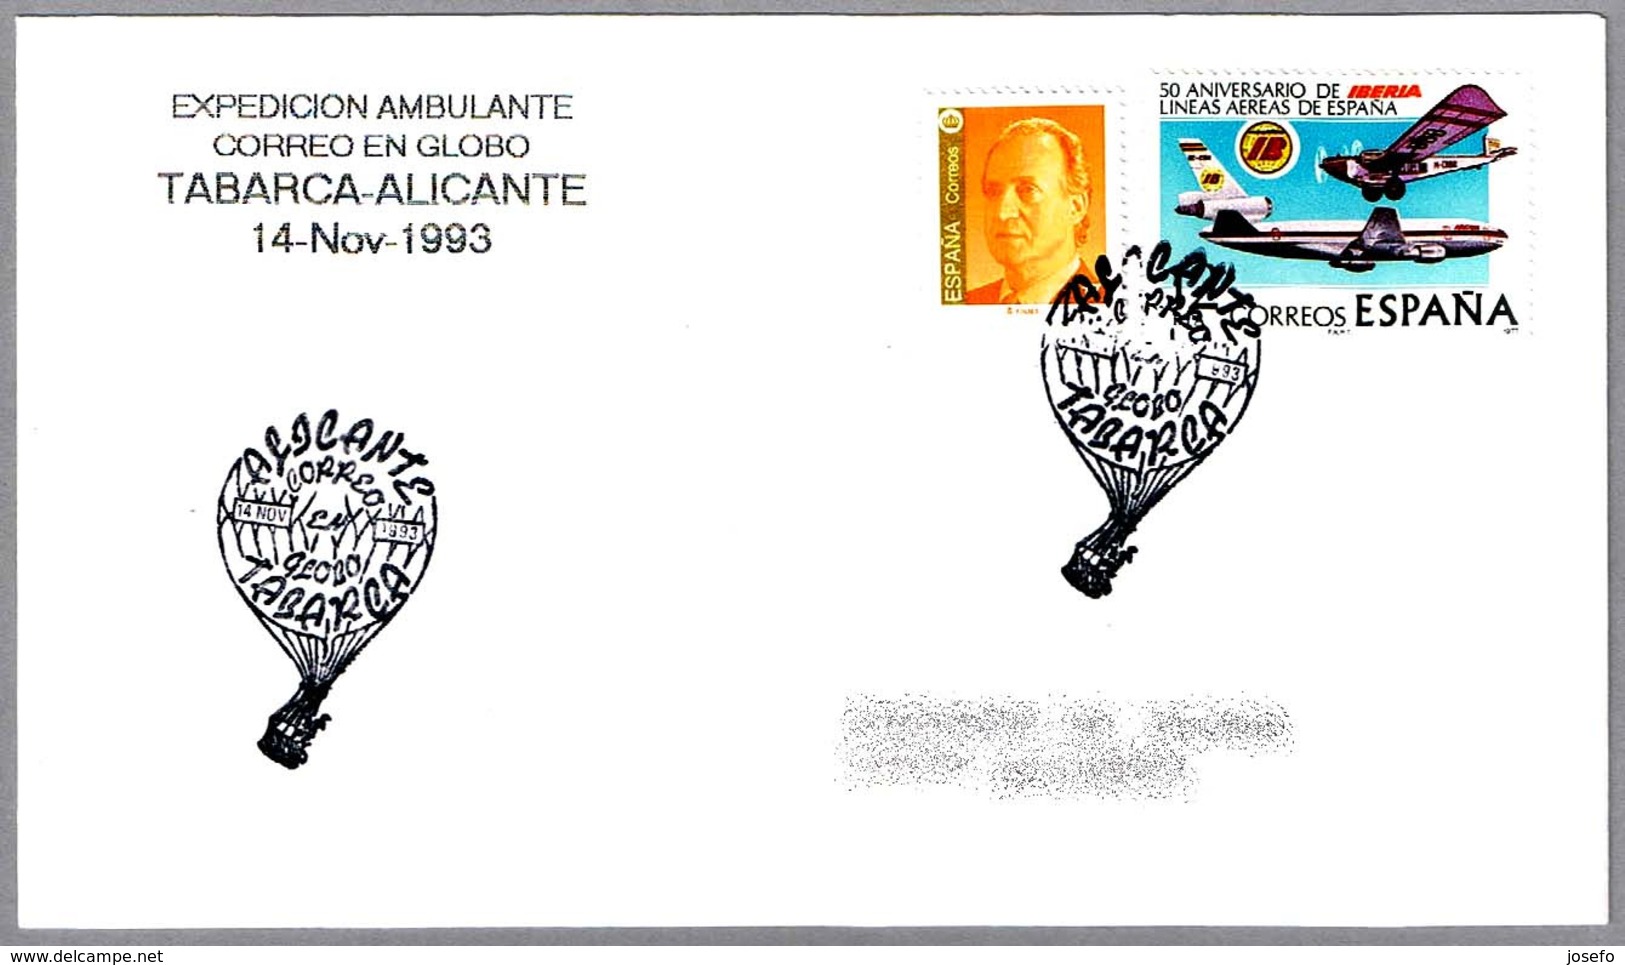 Expedicion Ambulante CORREO EN GLOBO TABARCA-ALICANTE. 1993 - Correo Postal